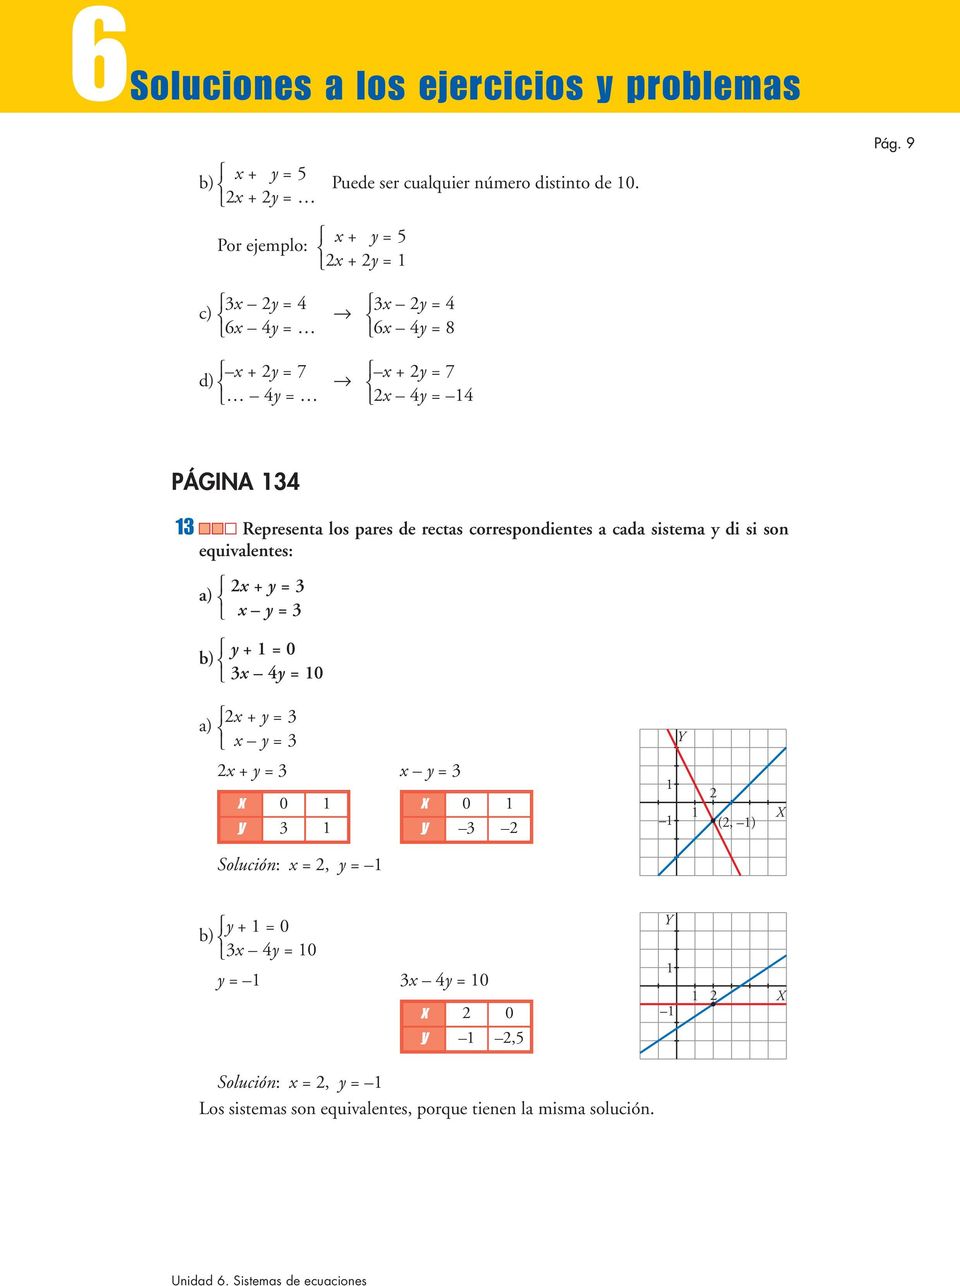 los pares de rectas correspondientes a cada sistema y di si son equivalentes: a) x + y = 3 x y = 3 y + = 0 b) 3x 4y = 0 x + y = 3